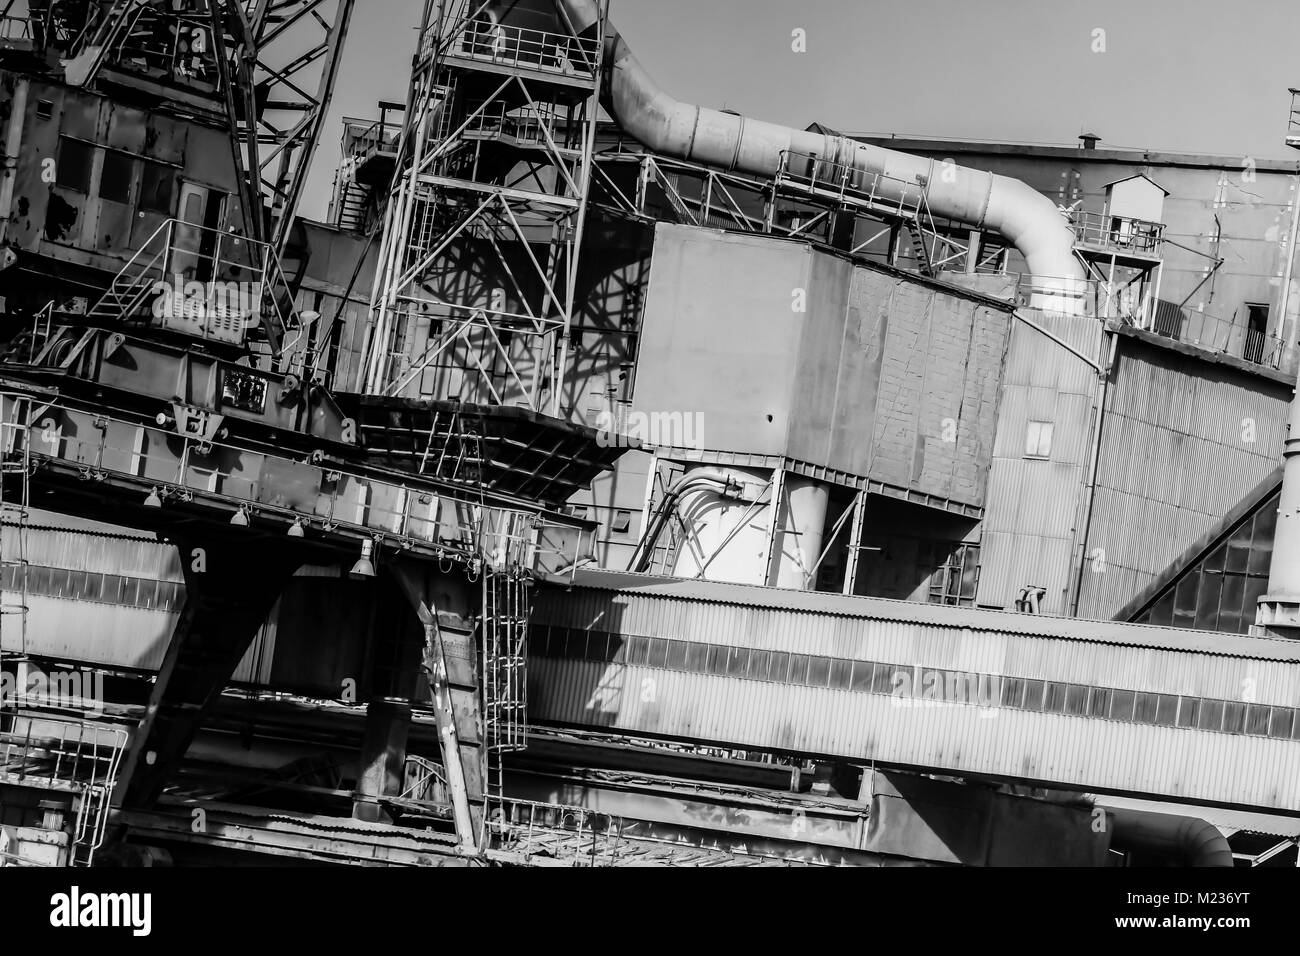 Astillero de Gdansk, Polonia. Estilo retro en blanco y negro. Grúas, antiguo astillero edificios, estructuras oxidadas. Foto de stock